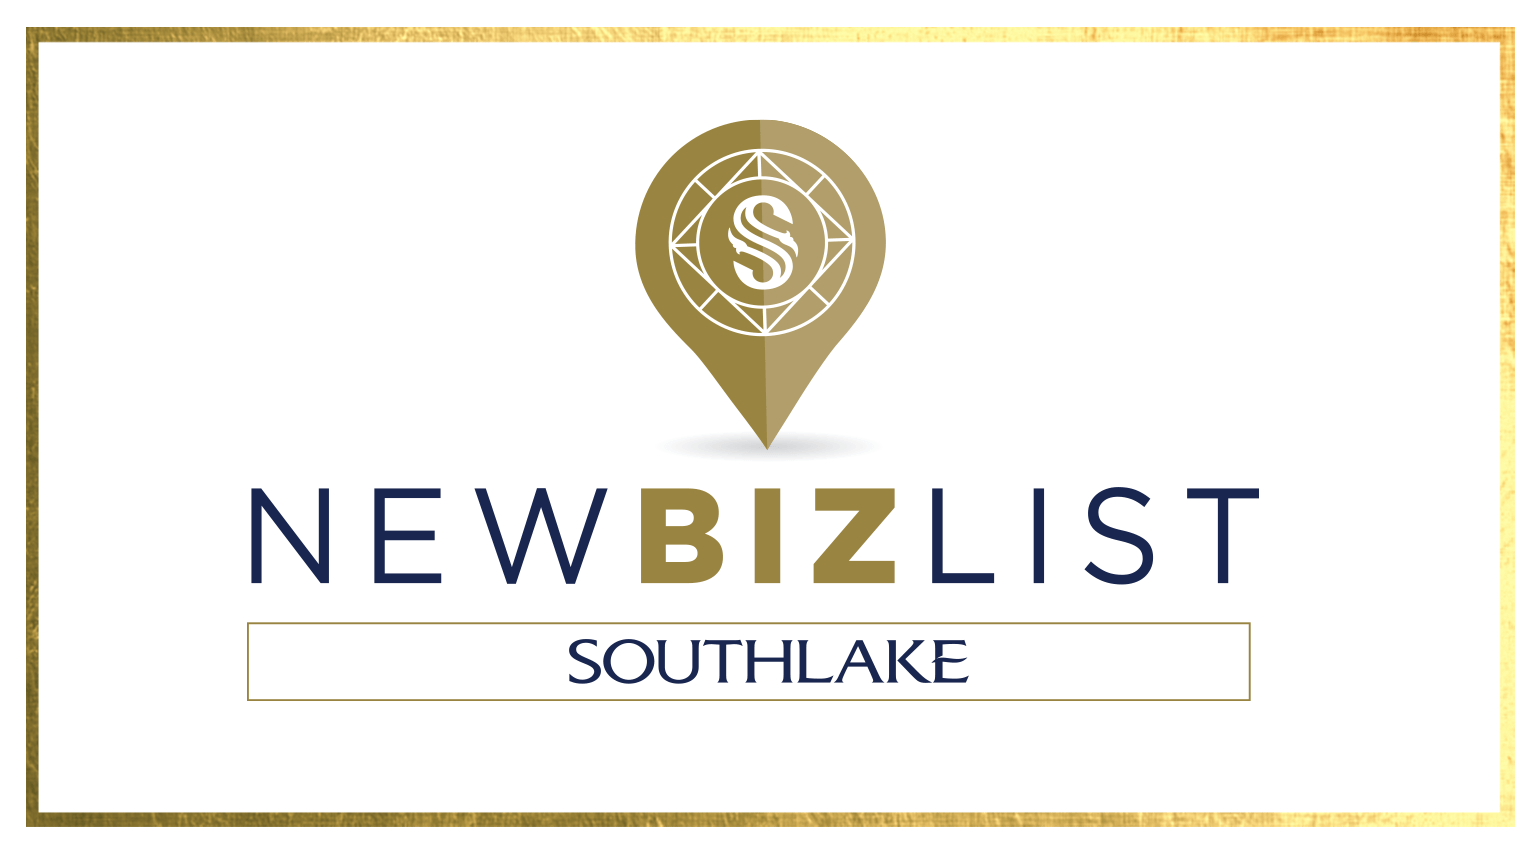 Southlake New Biz List